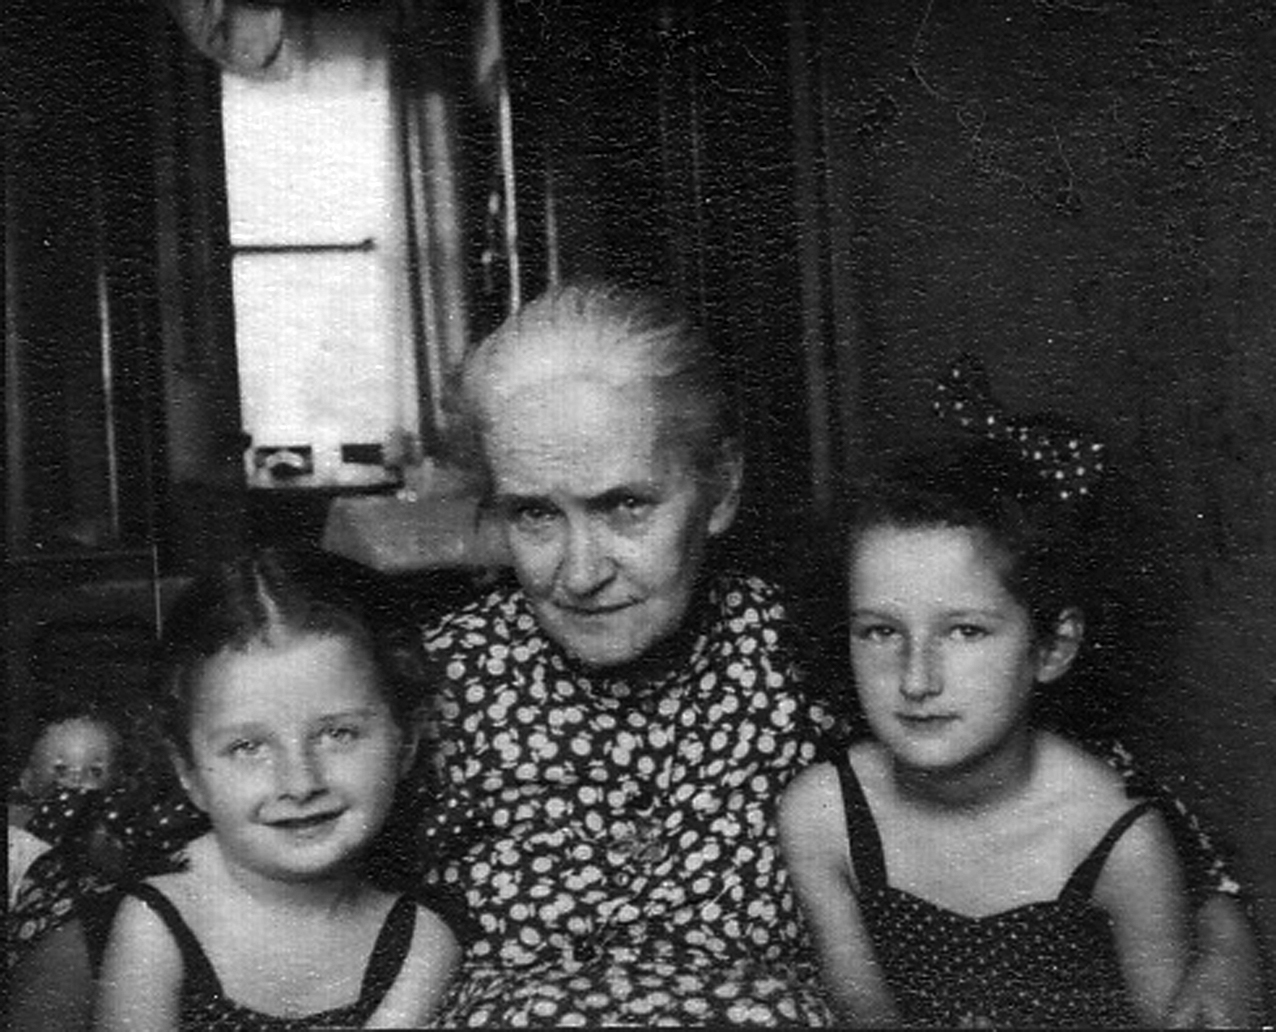 Marta i Elżbieta Czok z babcią Marią Żurakowską (z domu Jastrzębską). Fot. z archiwum rodzinnego (źródło: kwartalnik Akcent)